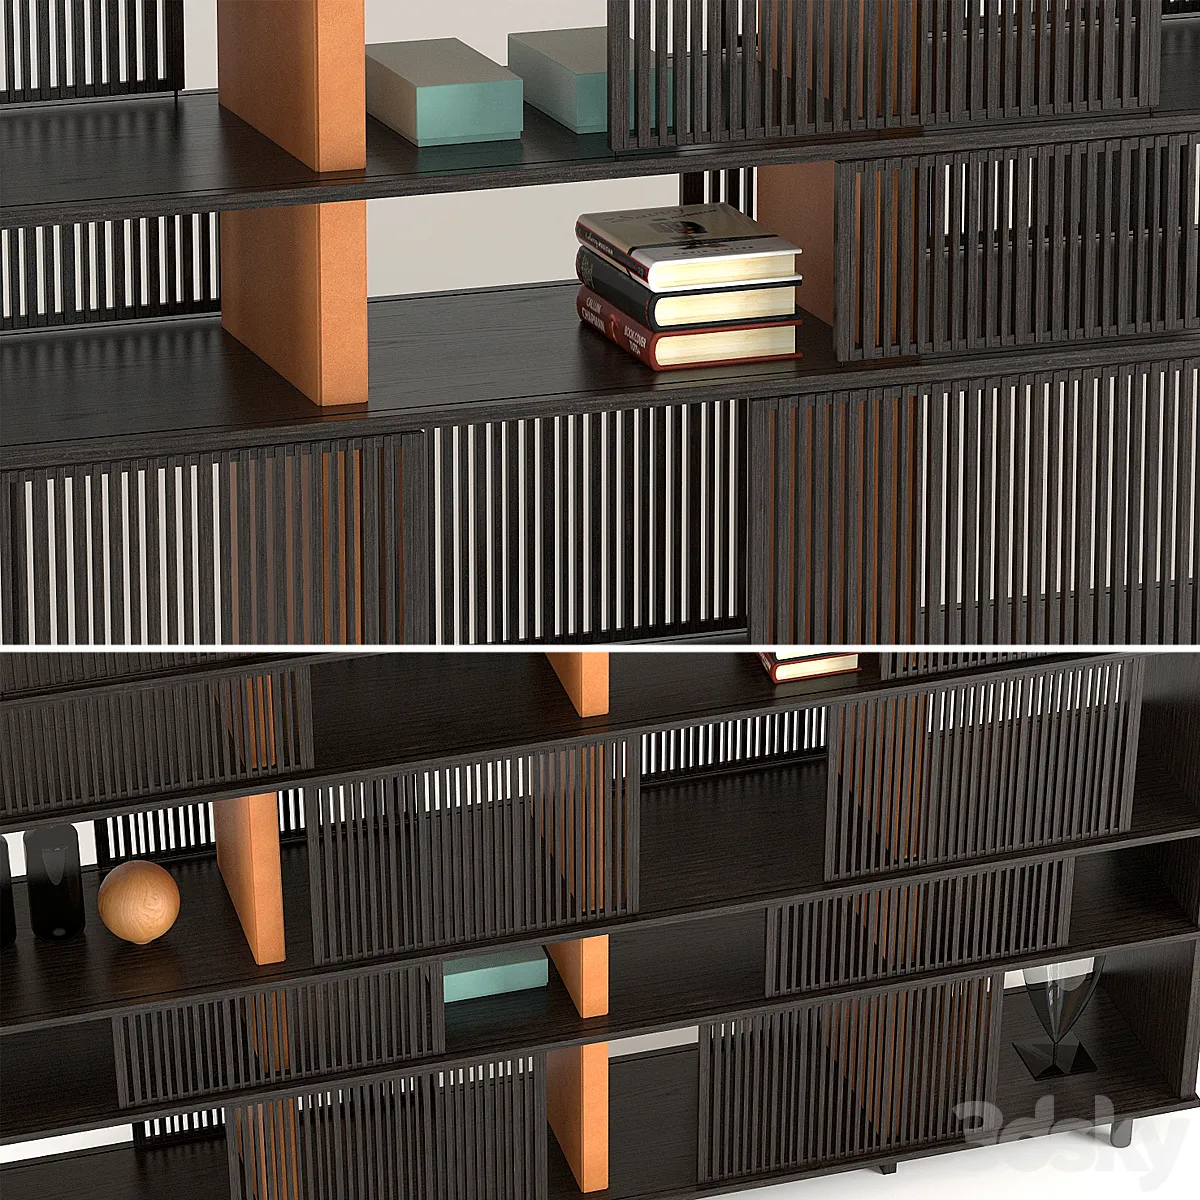 مدل سه بعدی کتابخانه مدرن 2 - 4